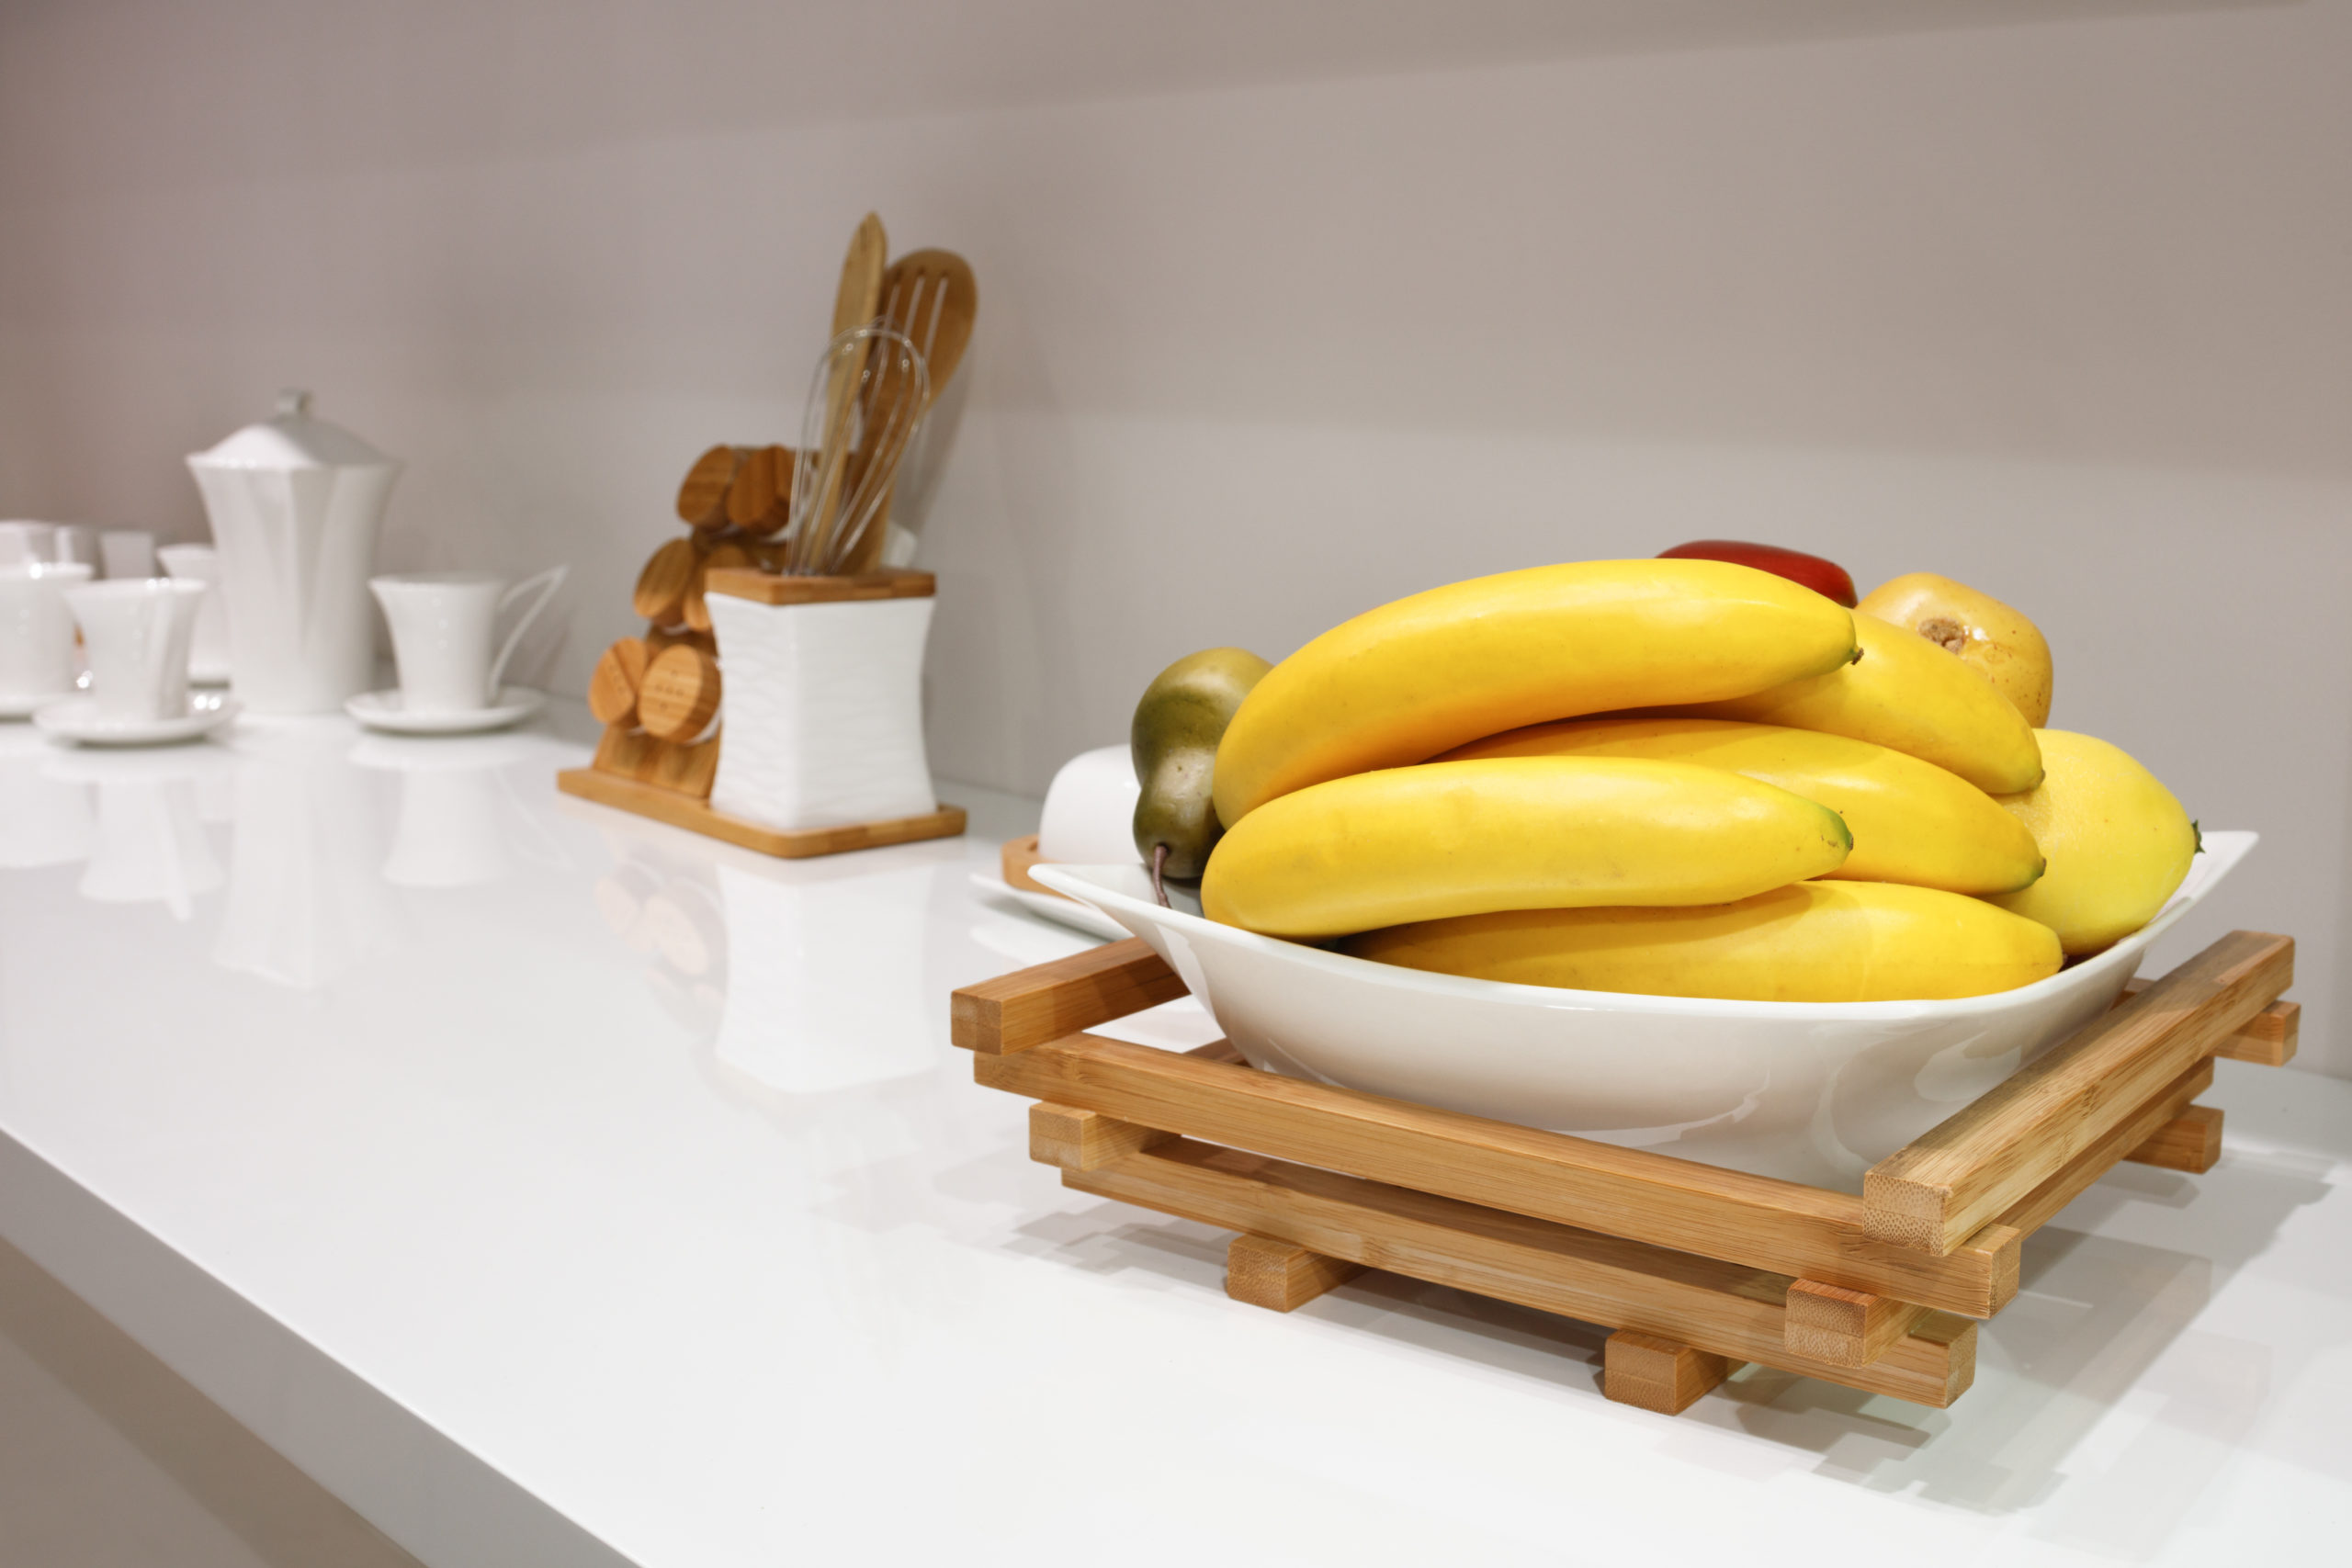 Bananas pop in a white kitchen.